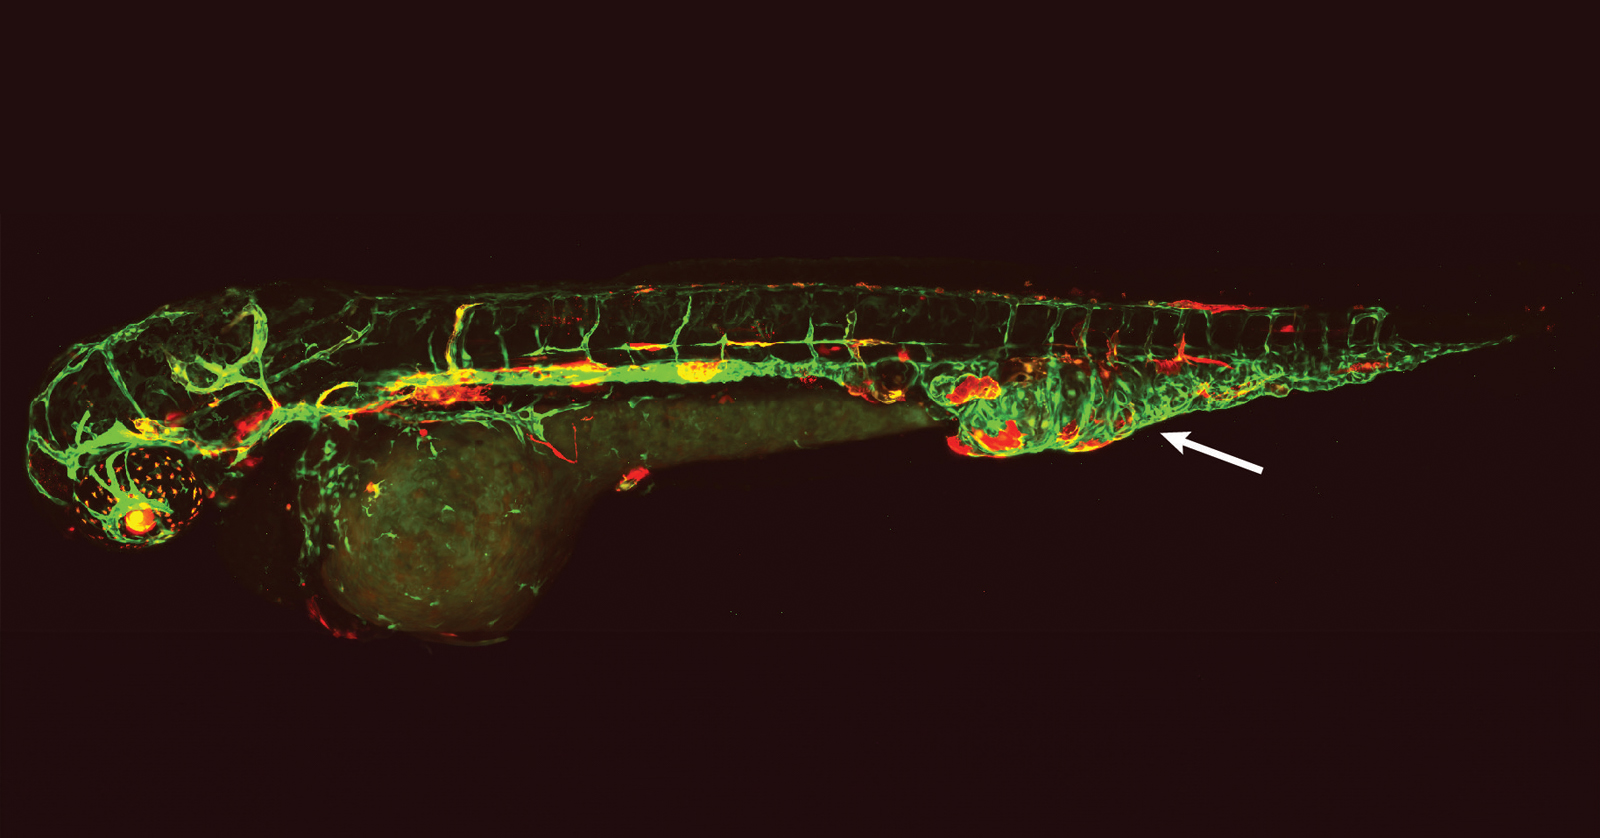 Un pez cebra con los vasos linfáticos y sanguíneos marcados con fluorescencia y una malformación vascular en la cola.